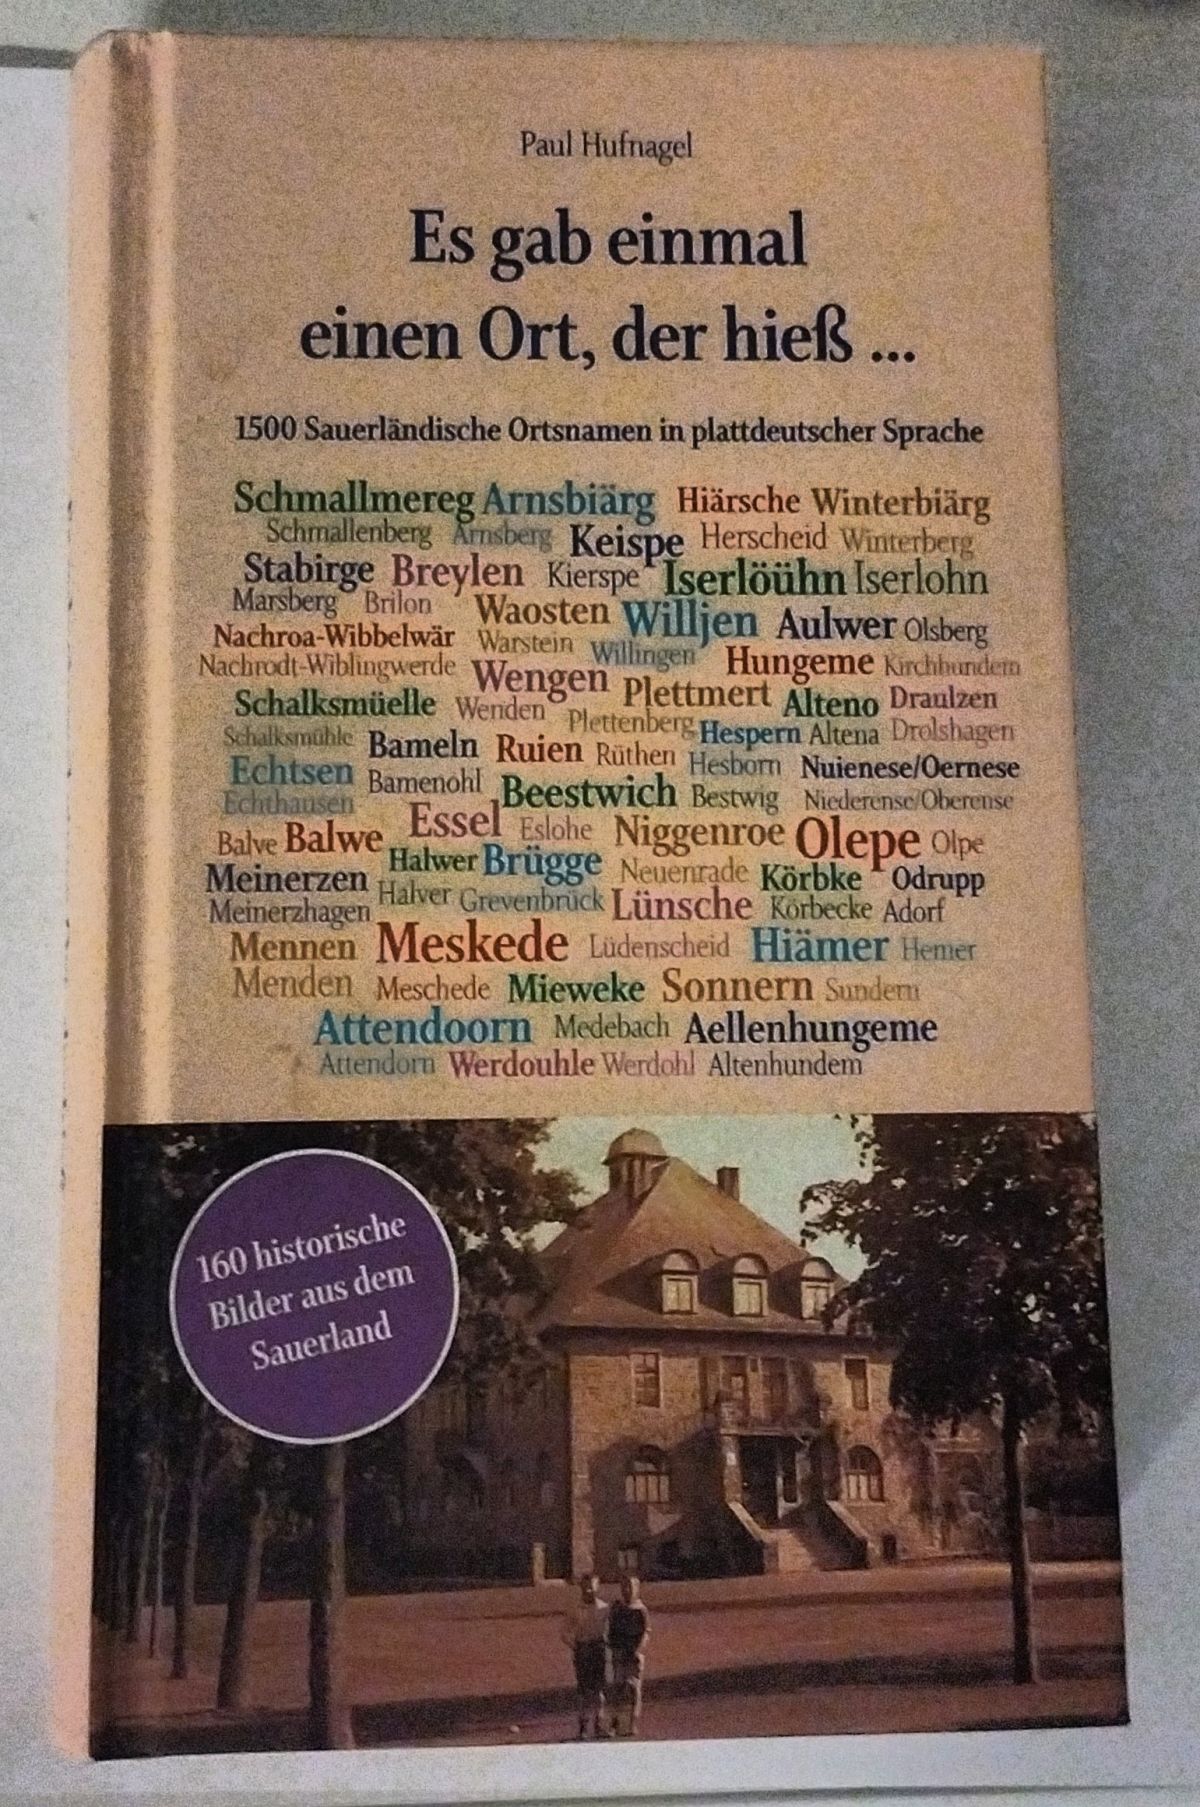 Von Aellenhungeme bis Willjen: Paul Hufnagel bringt ein Buch mit 1.500 Ortsnamen heraus - op platt. von privat